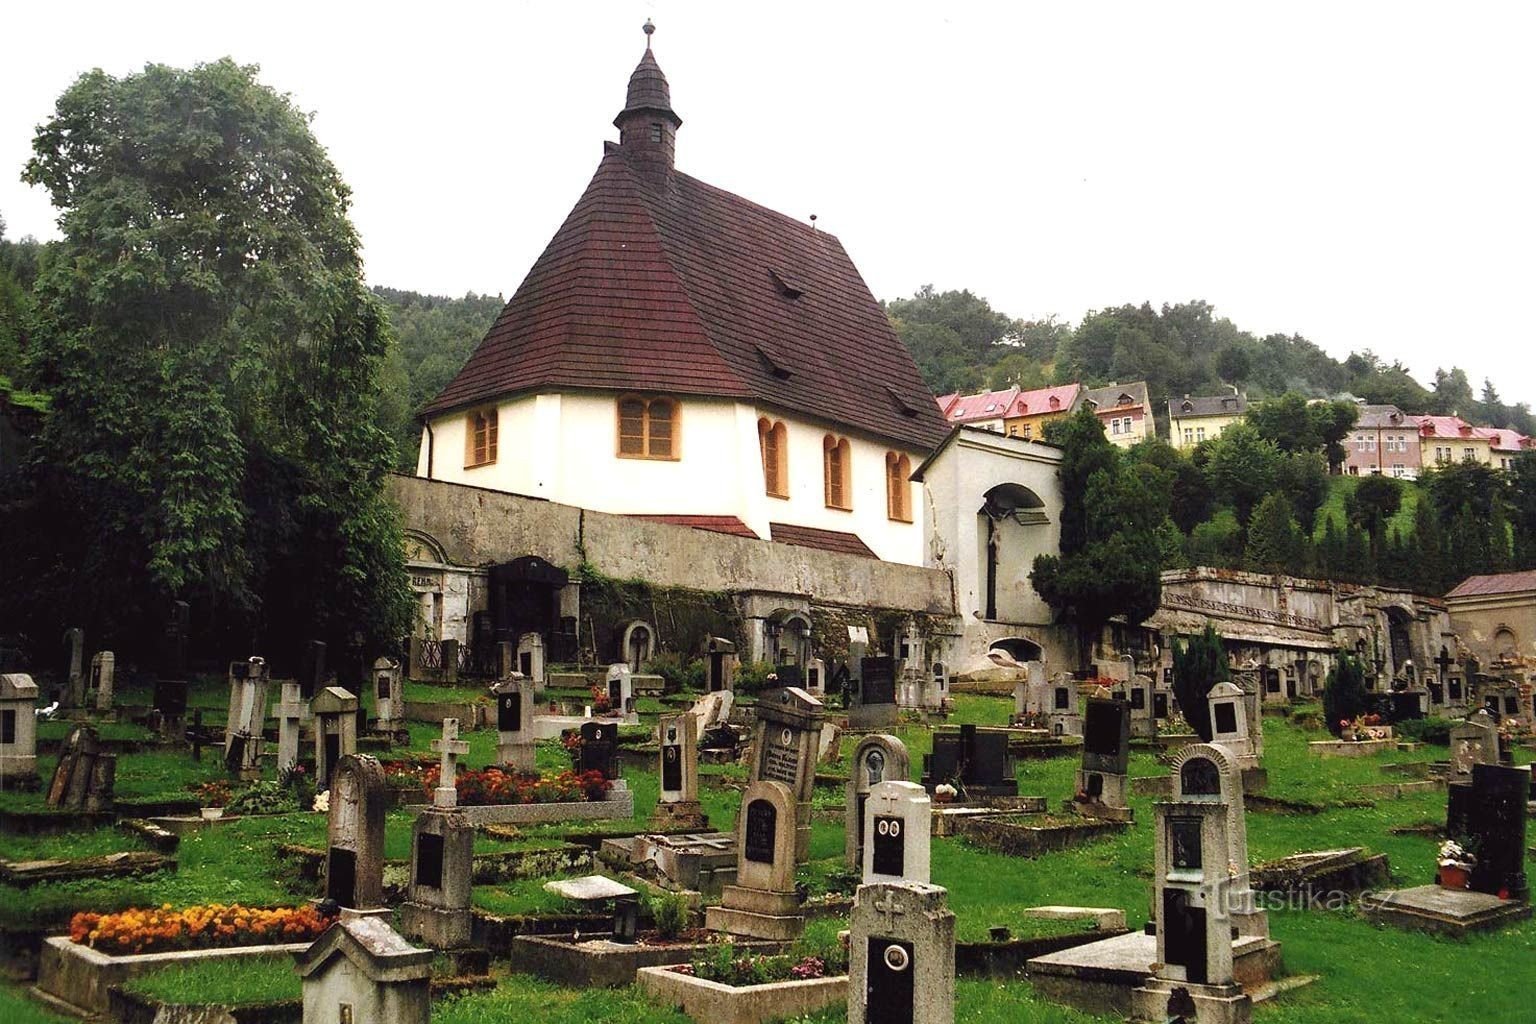 Vista do cemitério - Autor: V. Vojíř